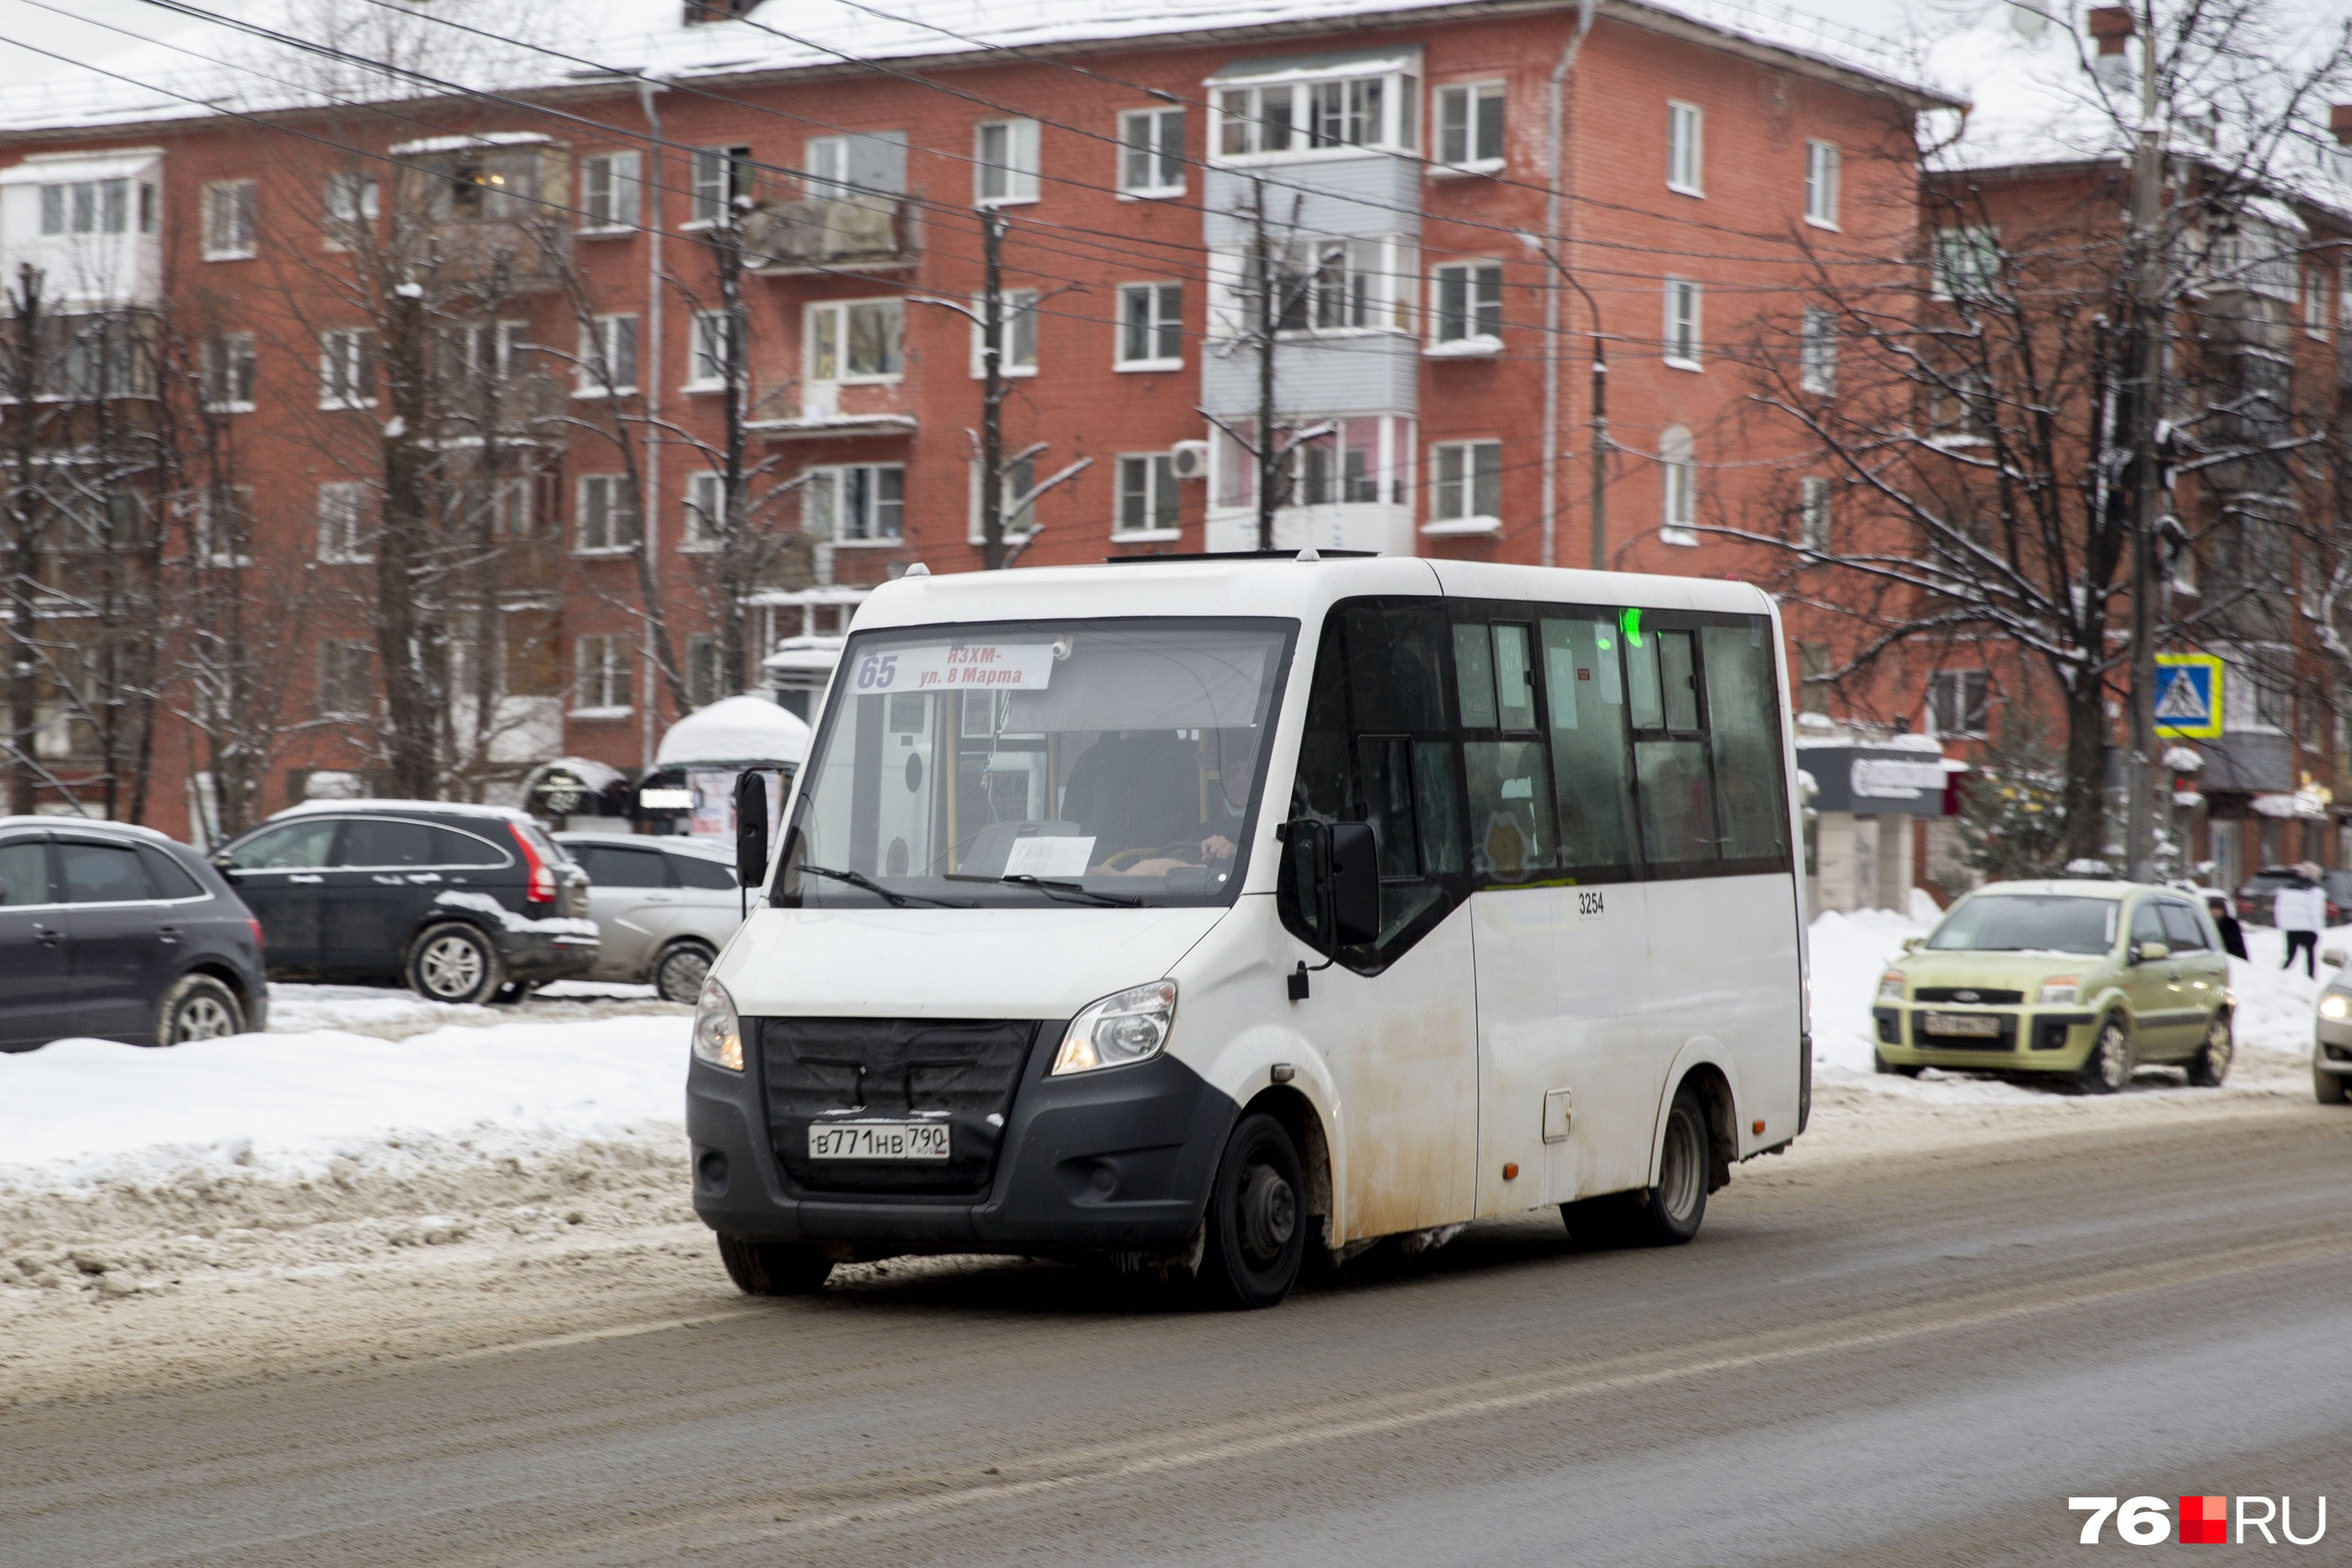 Рынок автобусных перевозок в Ярославле поделили девять перевозчиков. Наряду с местными в городе теперь работают компании из Москвы и Санкт-Петербурга